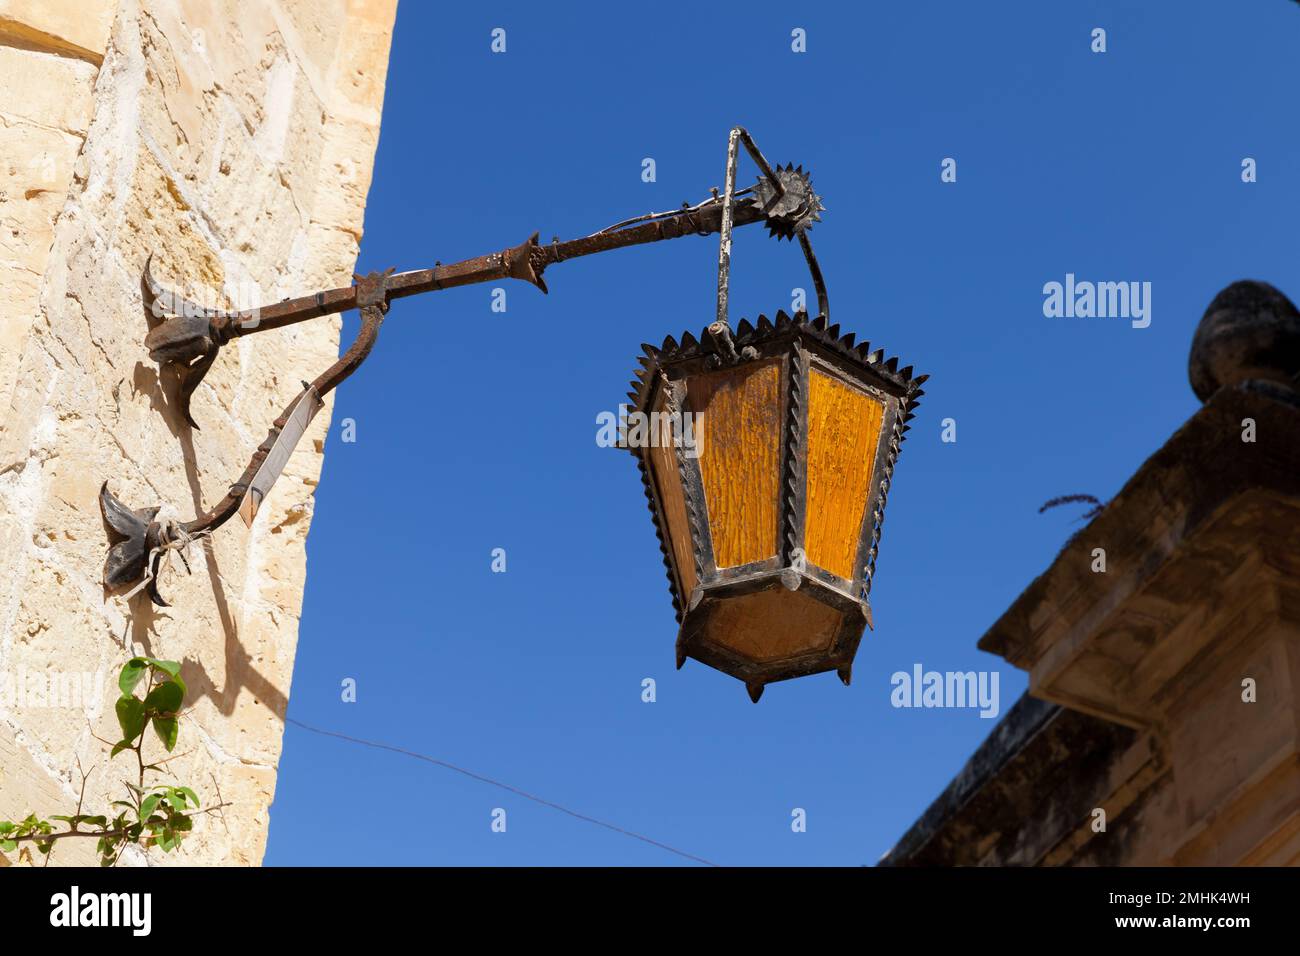 Nahaufnahme der alten Straßenbeleuchtung an einer Wand in Mdina, der befestigten Altstadt von Malta Stockfoto